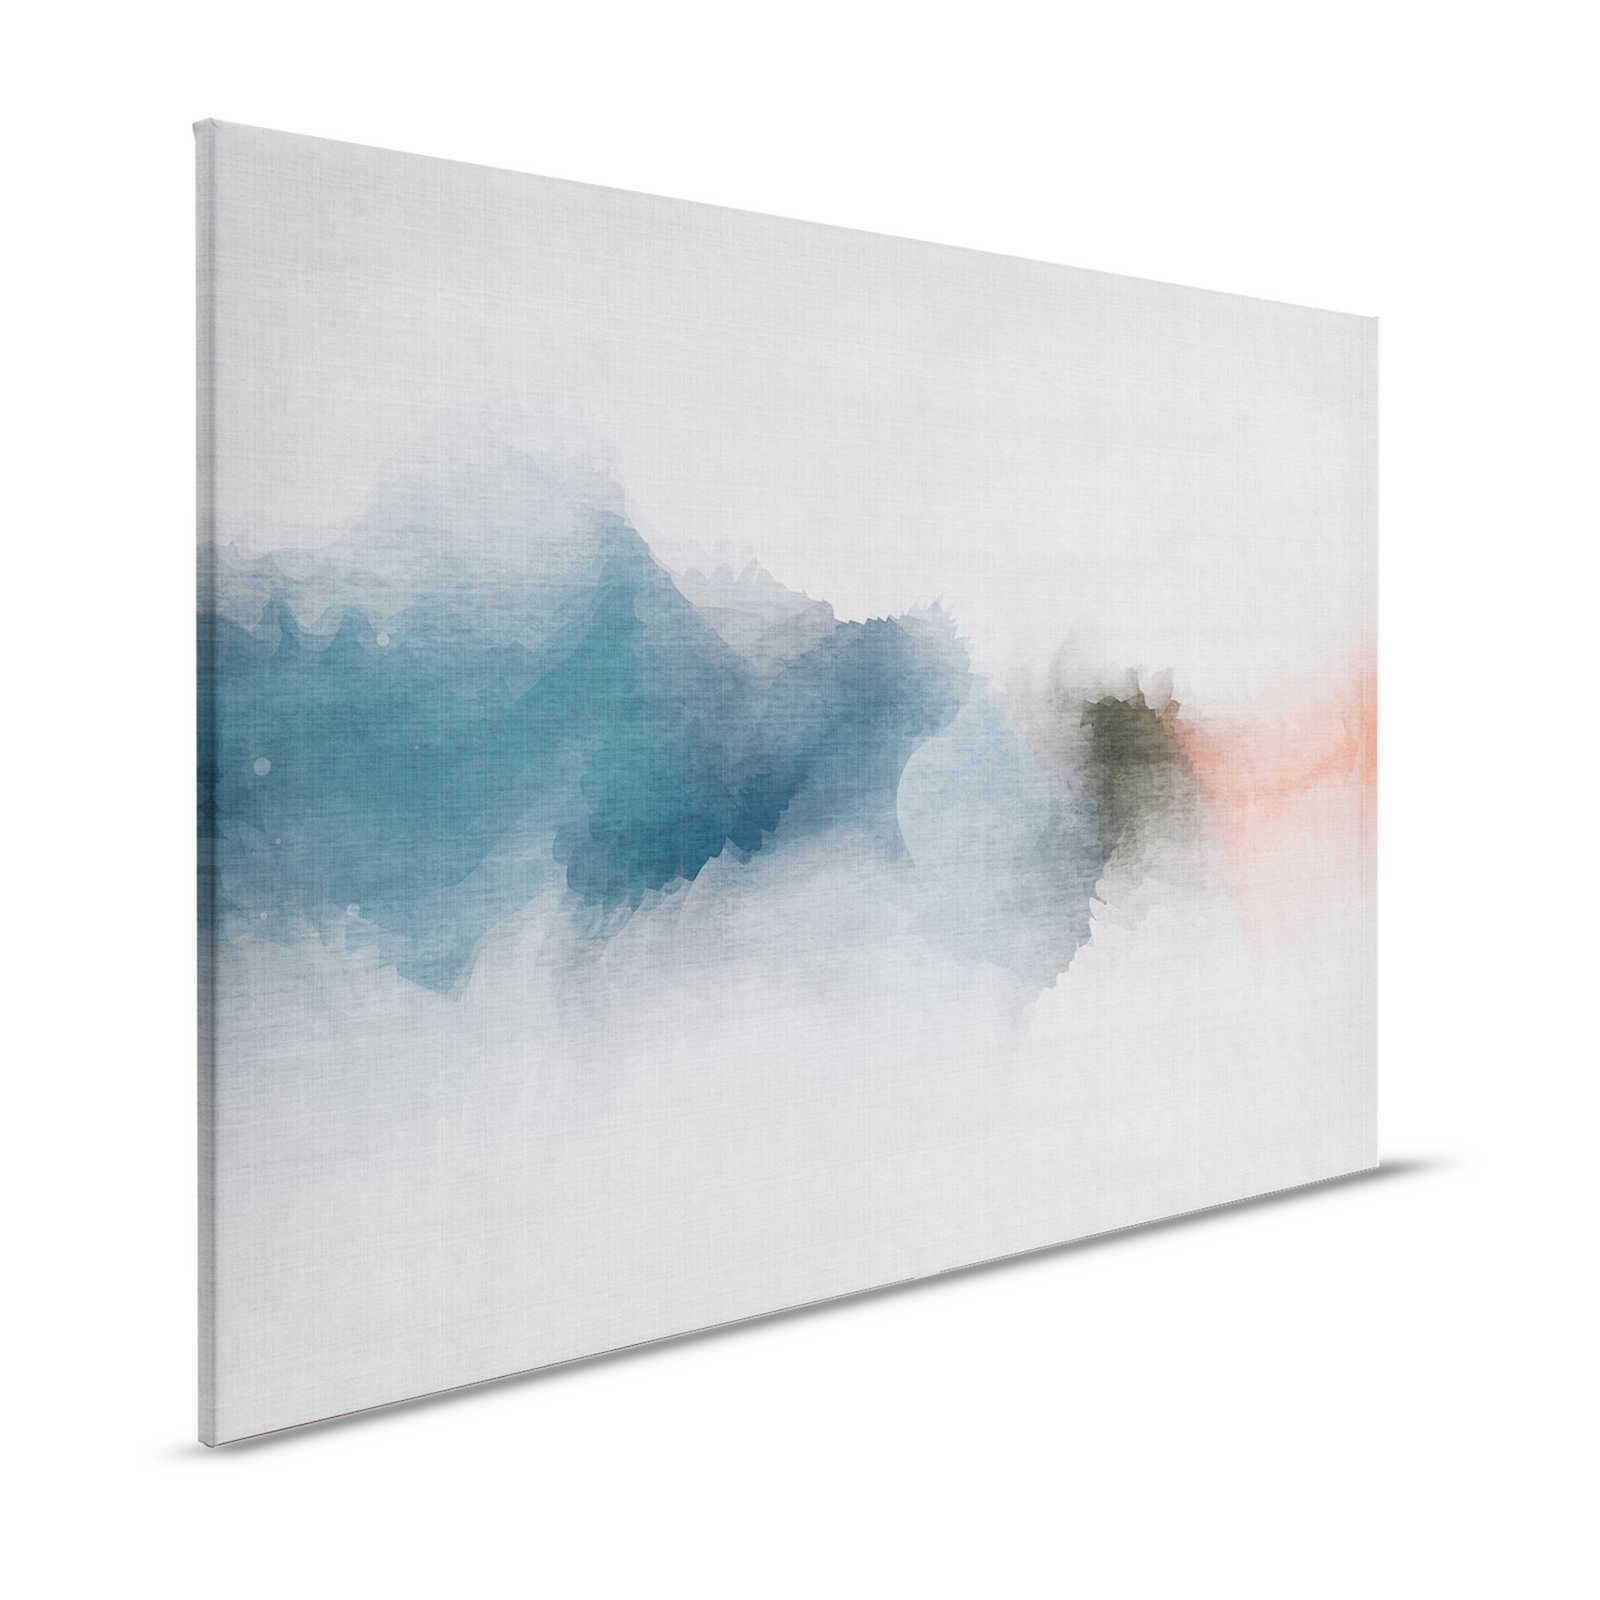 Daydream 1 - Stampa su tela in stile acquerello minimalista - aspetto lino naturale - 1,20 m x 0,80 m
